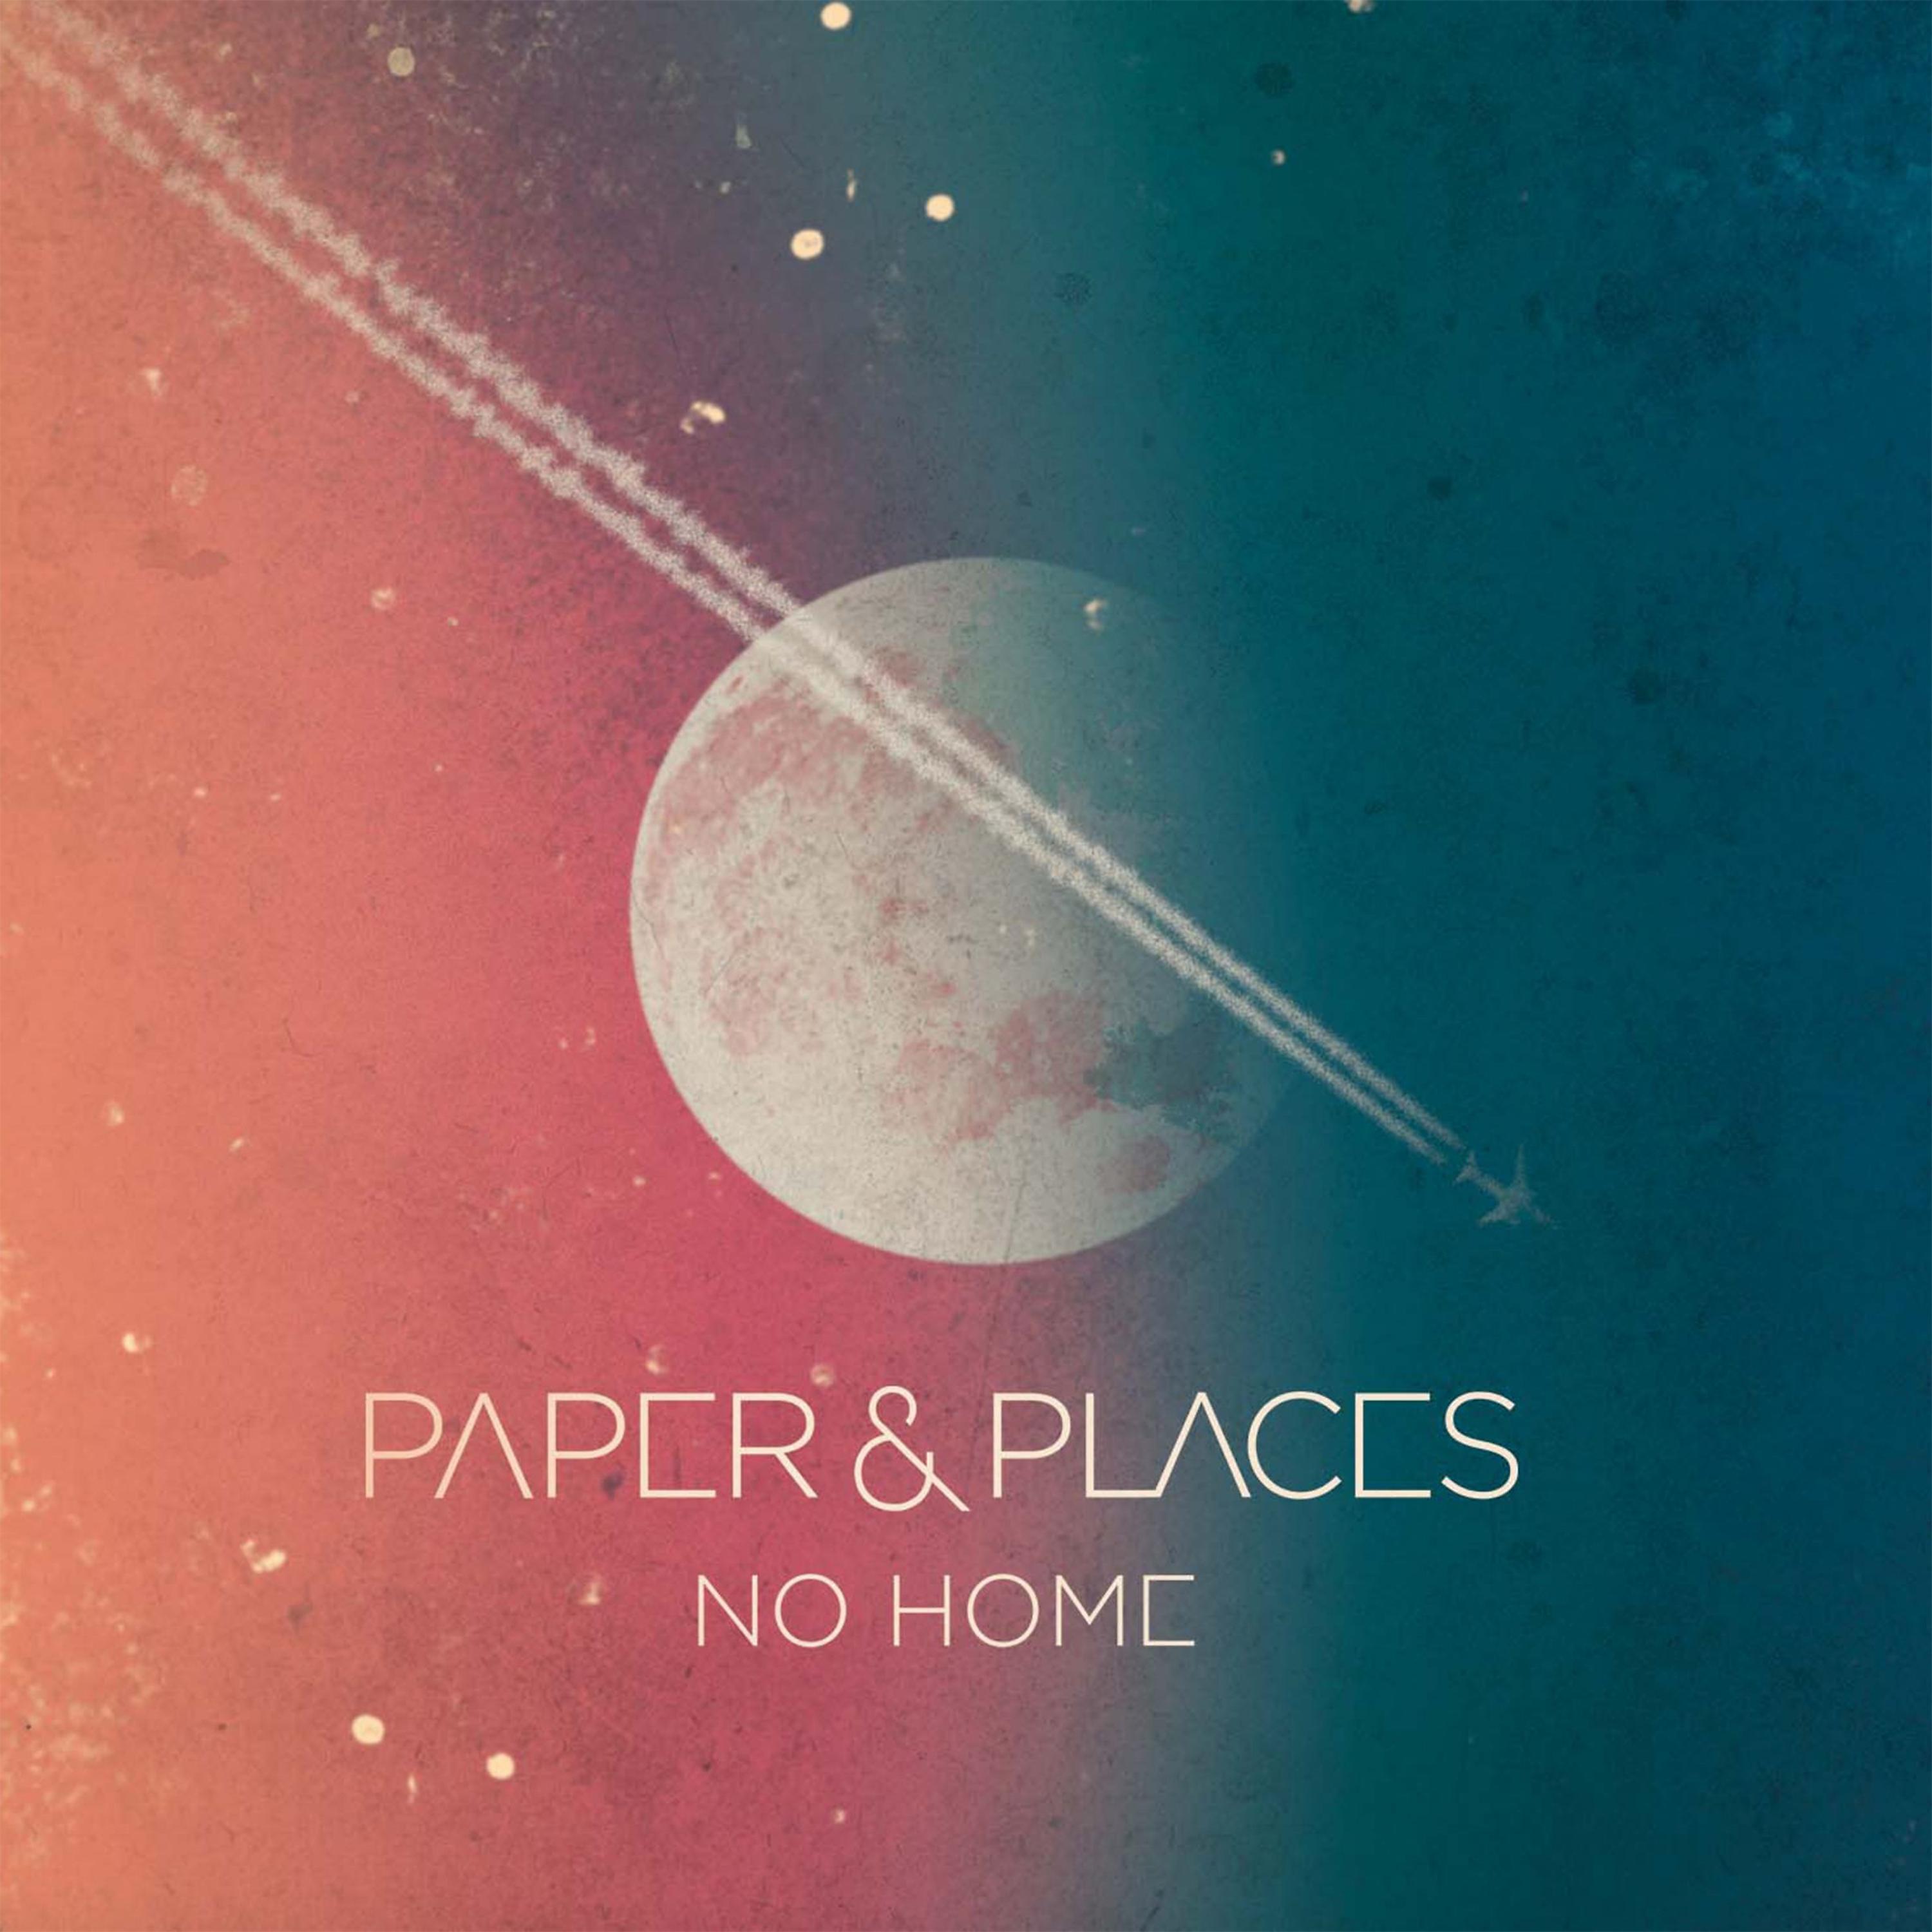 Paper places